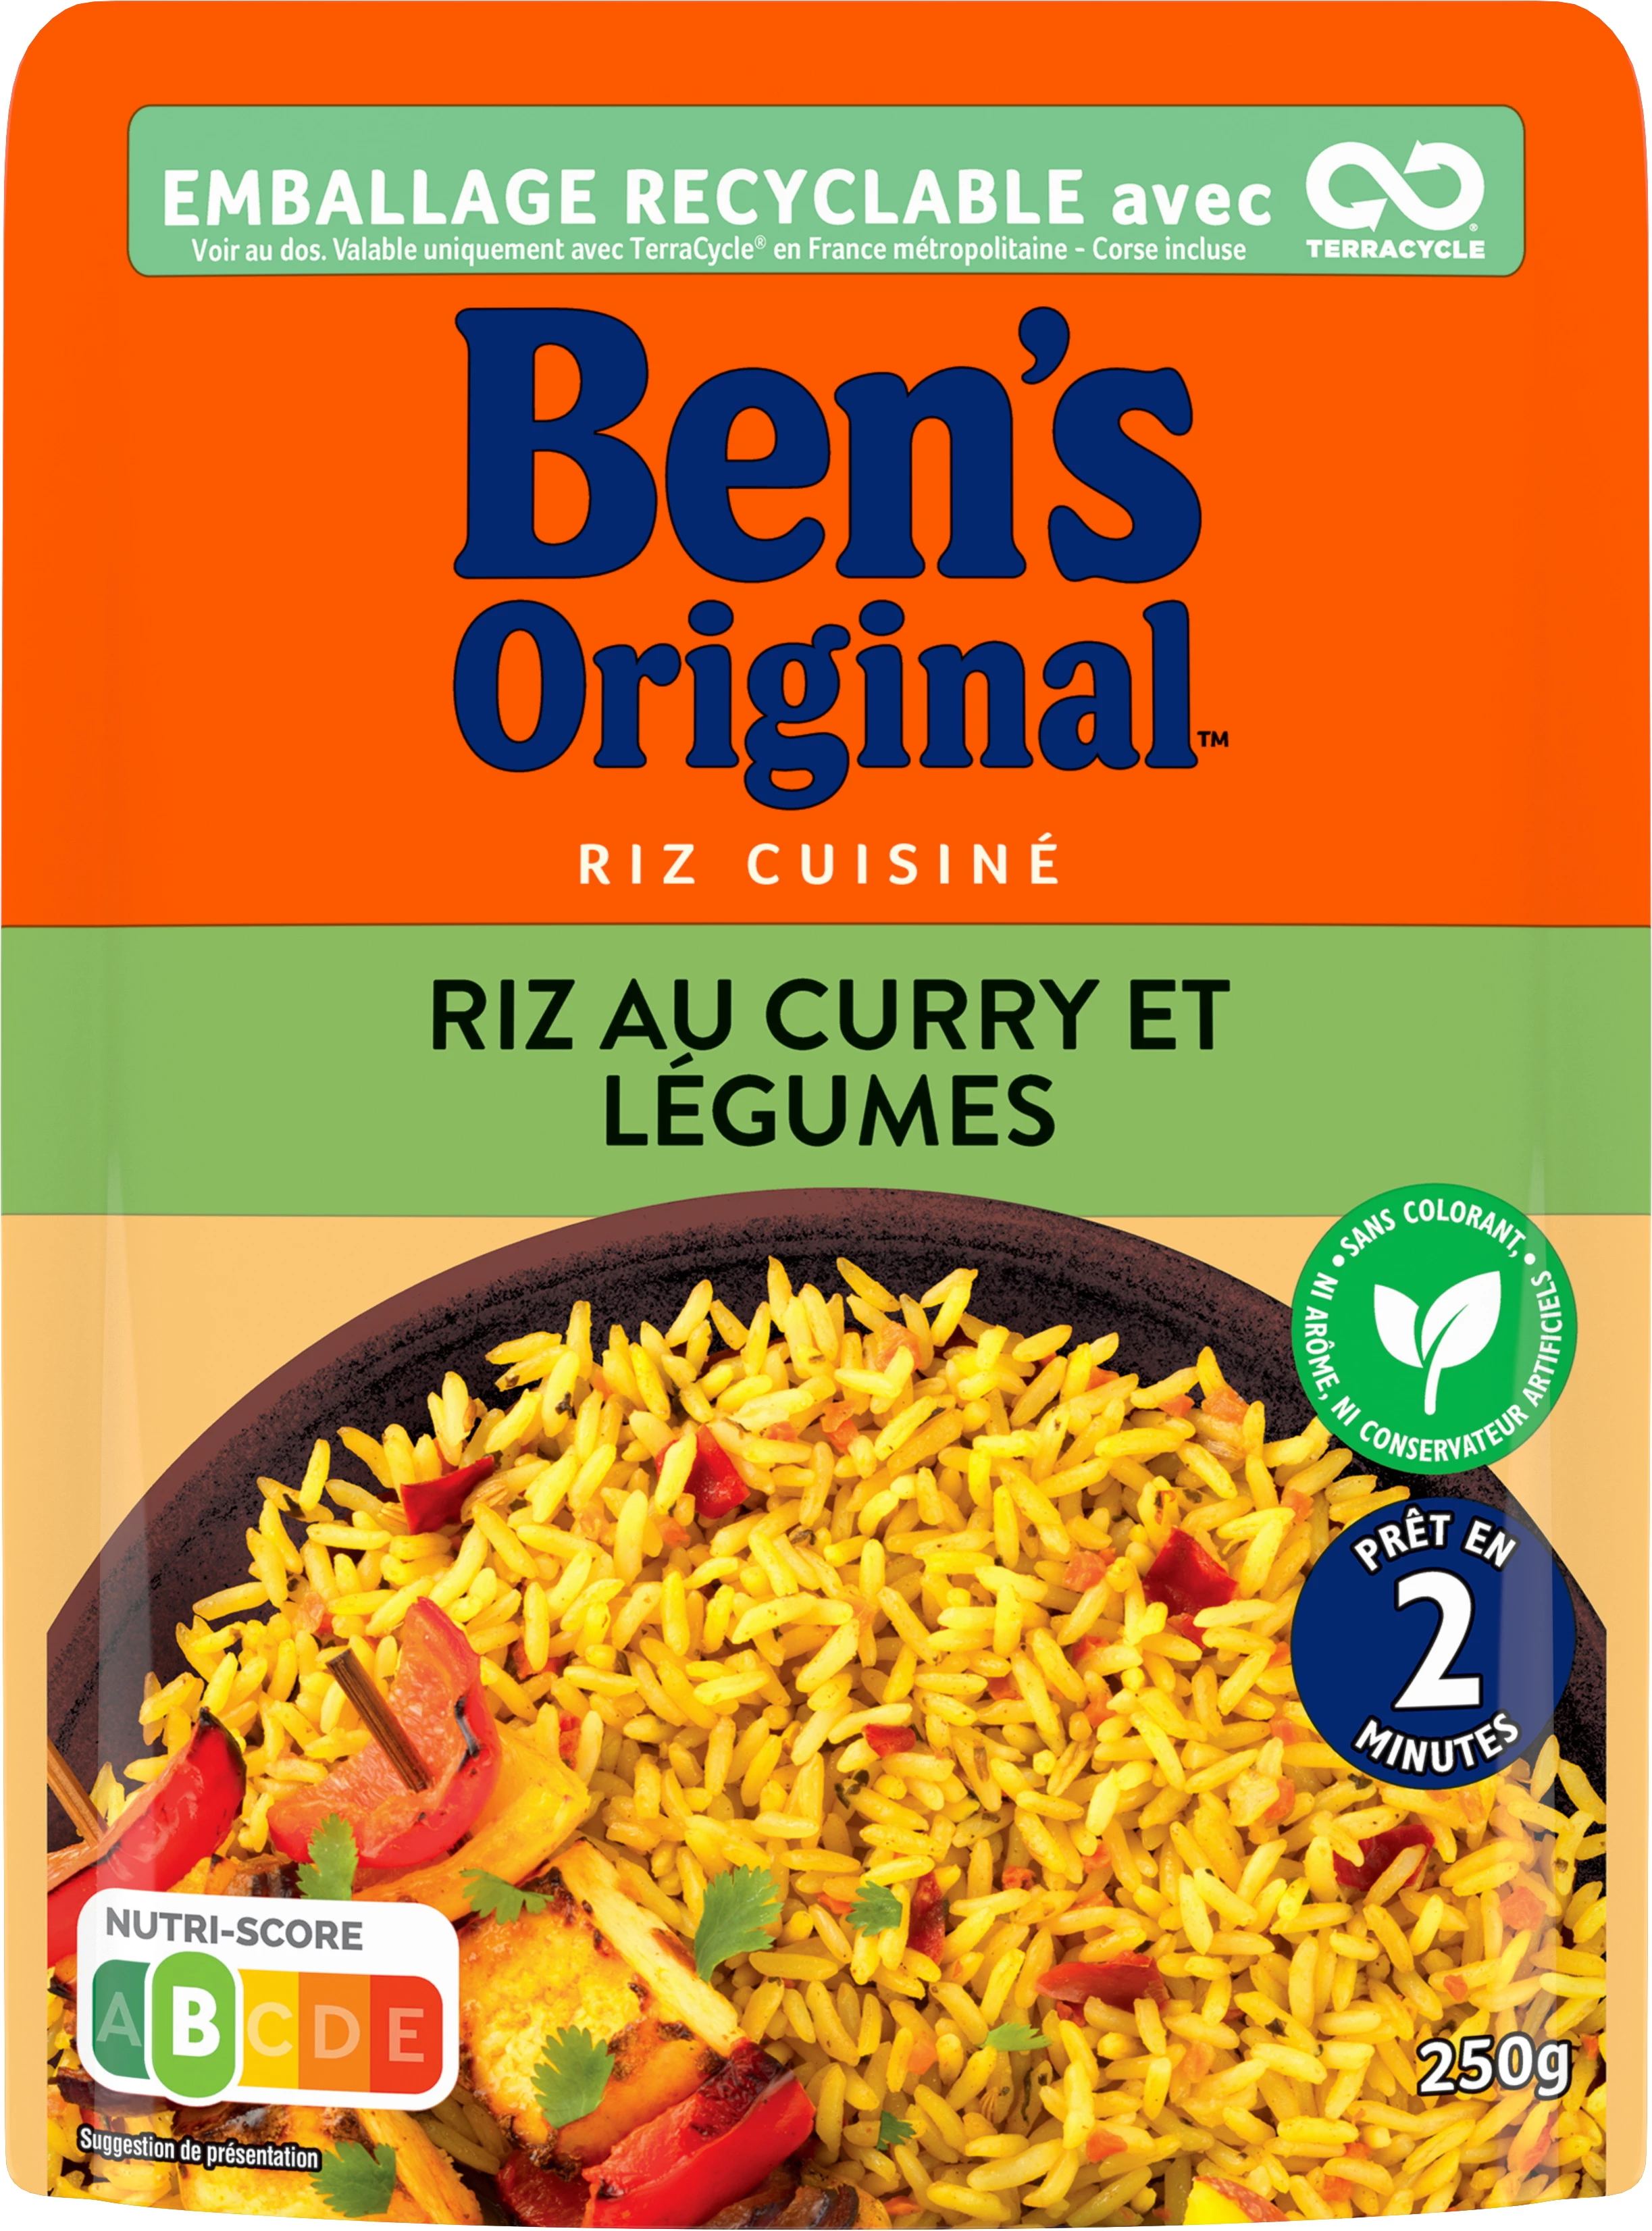 Riz Micro-ondes express au curry et Légumes, 250g -  BEN'S Original